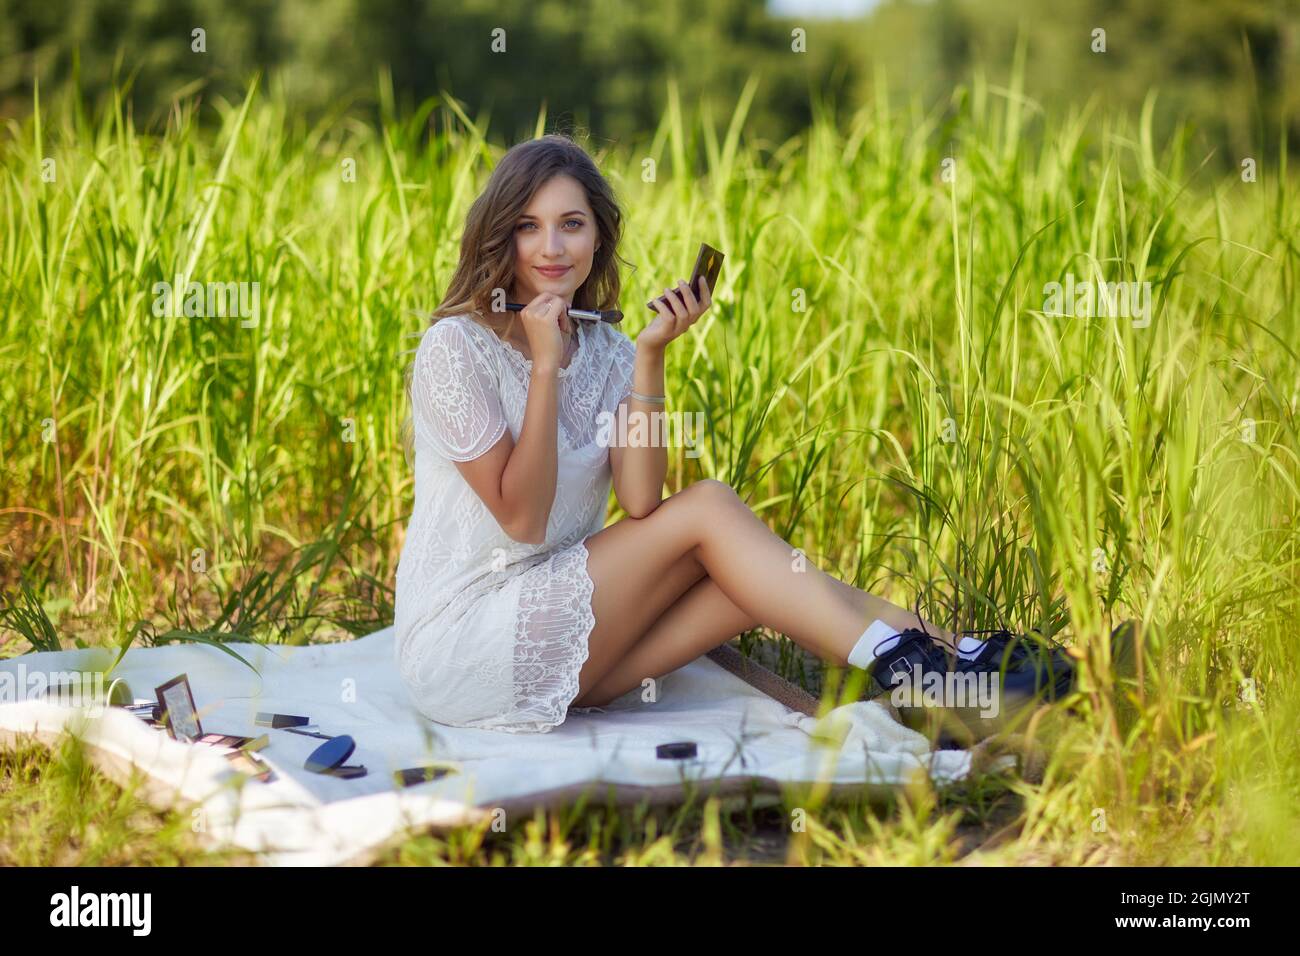 Jeune femme blonde en robe blanche est assise sur une plaque de pique-nique dans une grande herbe. Une maquilleuse féminine avec accessoires de maquillage se répand autour d'elle. Banque D'Images